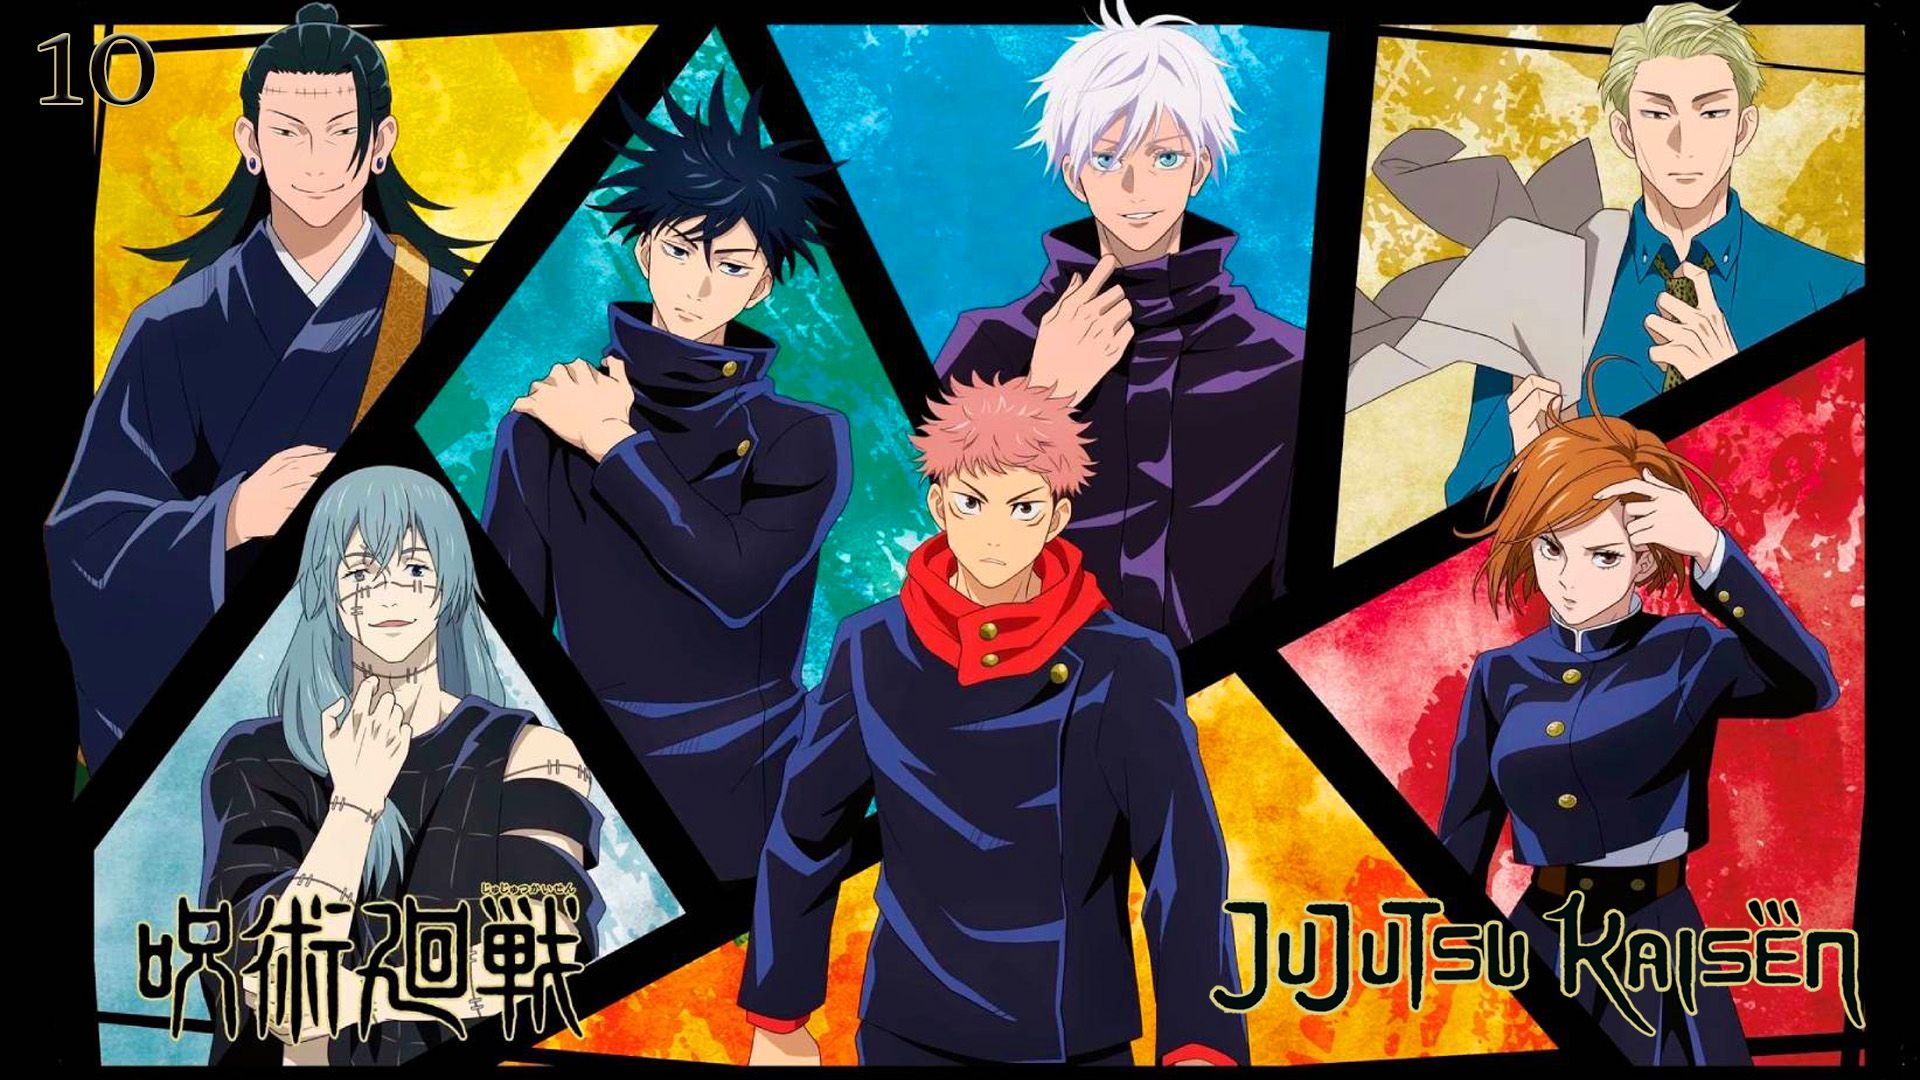 jujutsu kaisen 2 temporada #animenews #jujutsu #anime #edit #jujutsuka